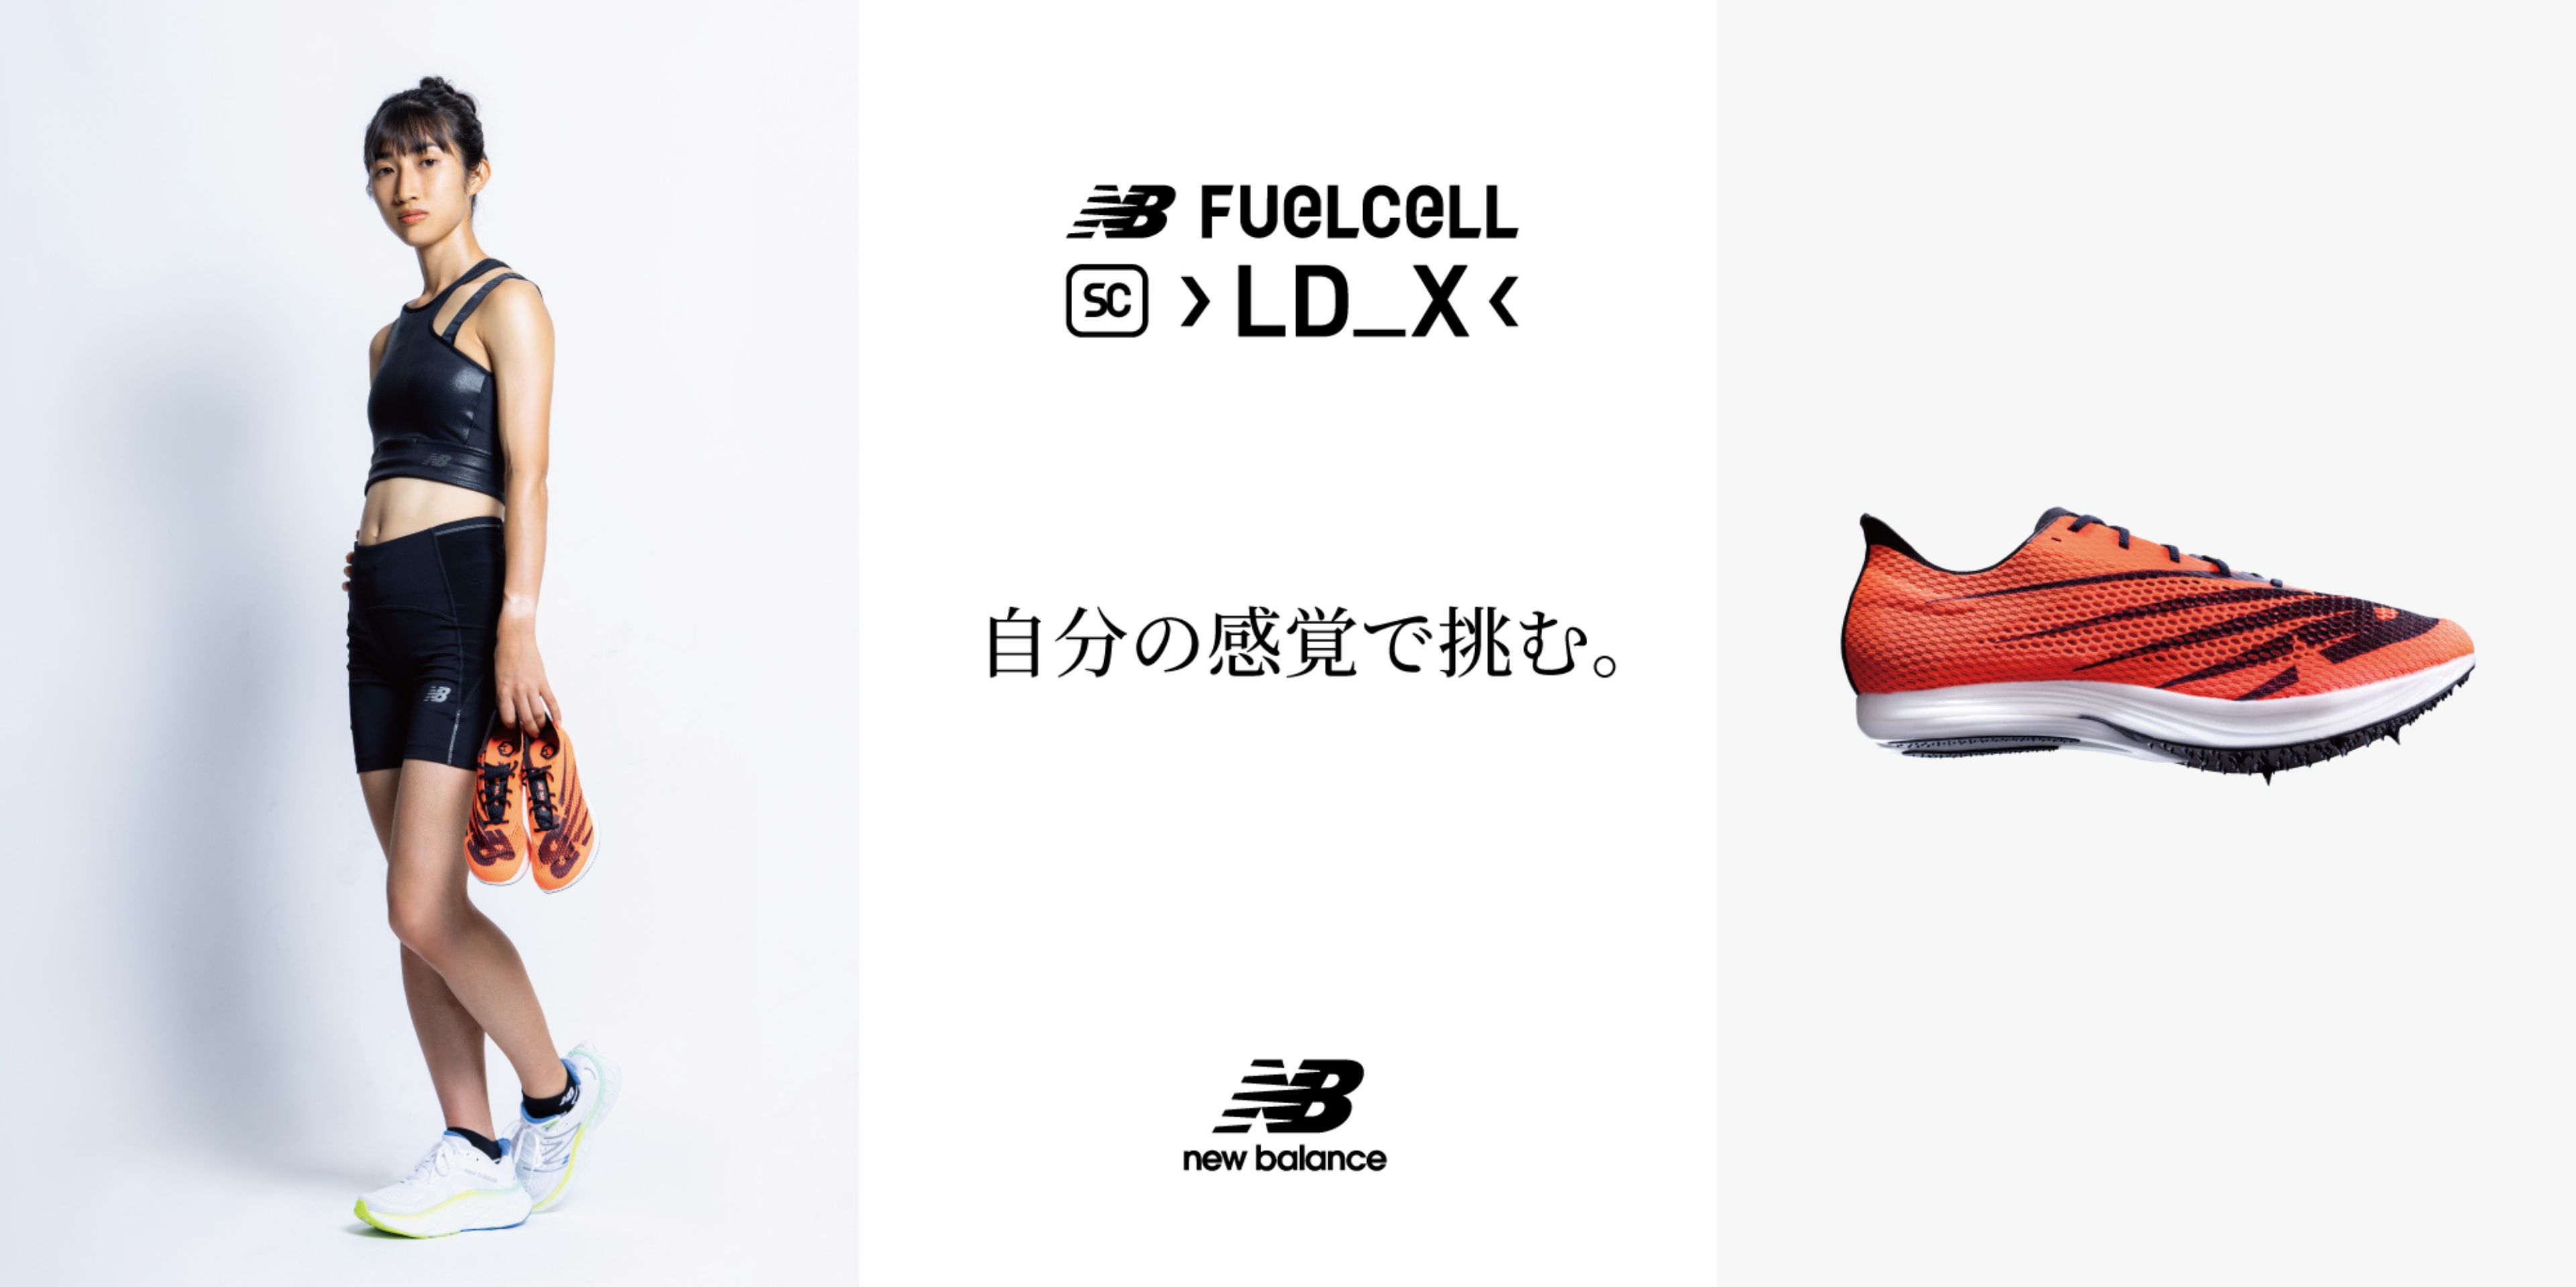 【未使用】New balance FUELCELL LD-X 26.0cmサイズ260cm